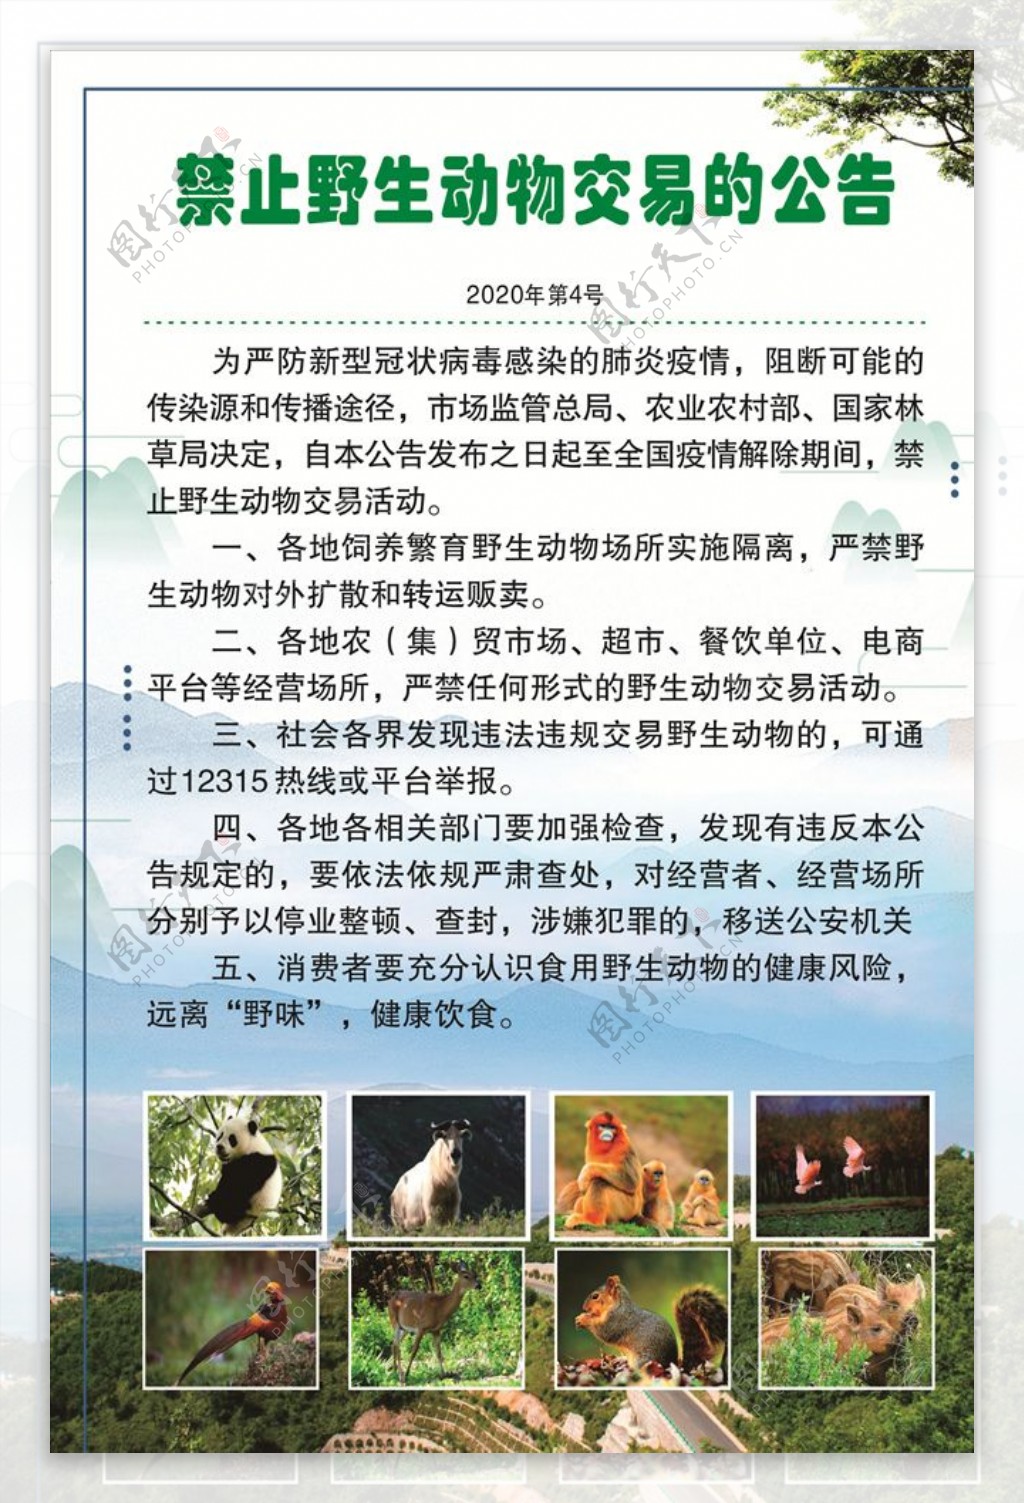 禁止野生动物交易通告图片